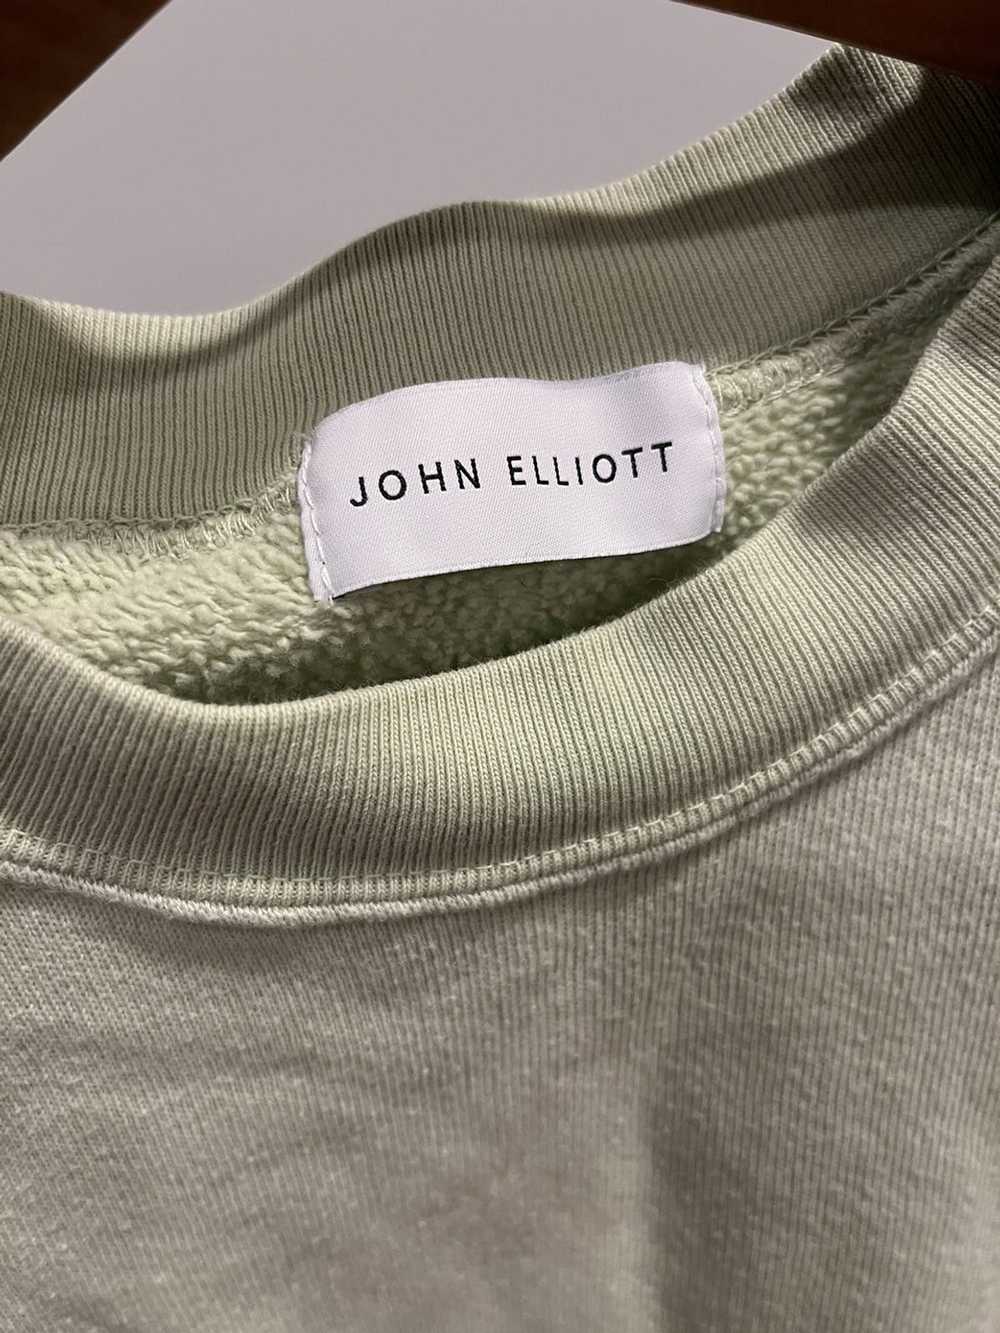 John Elliott John Elliot Cotton Jersey Sweatshirt - image 3